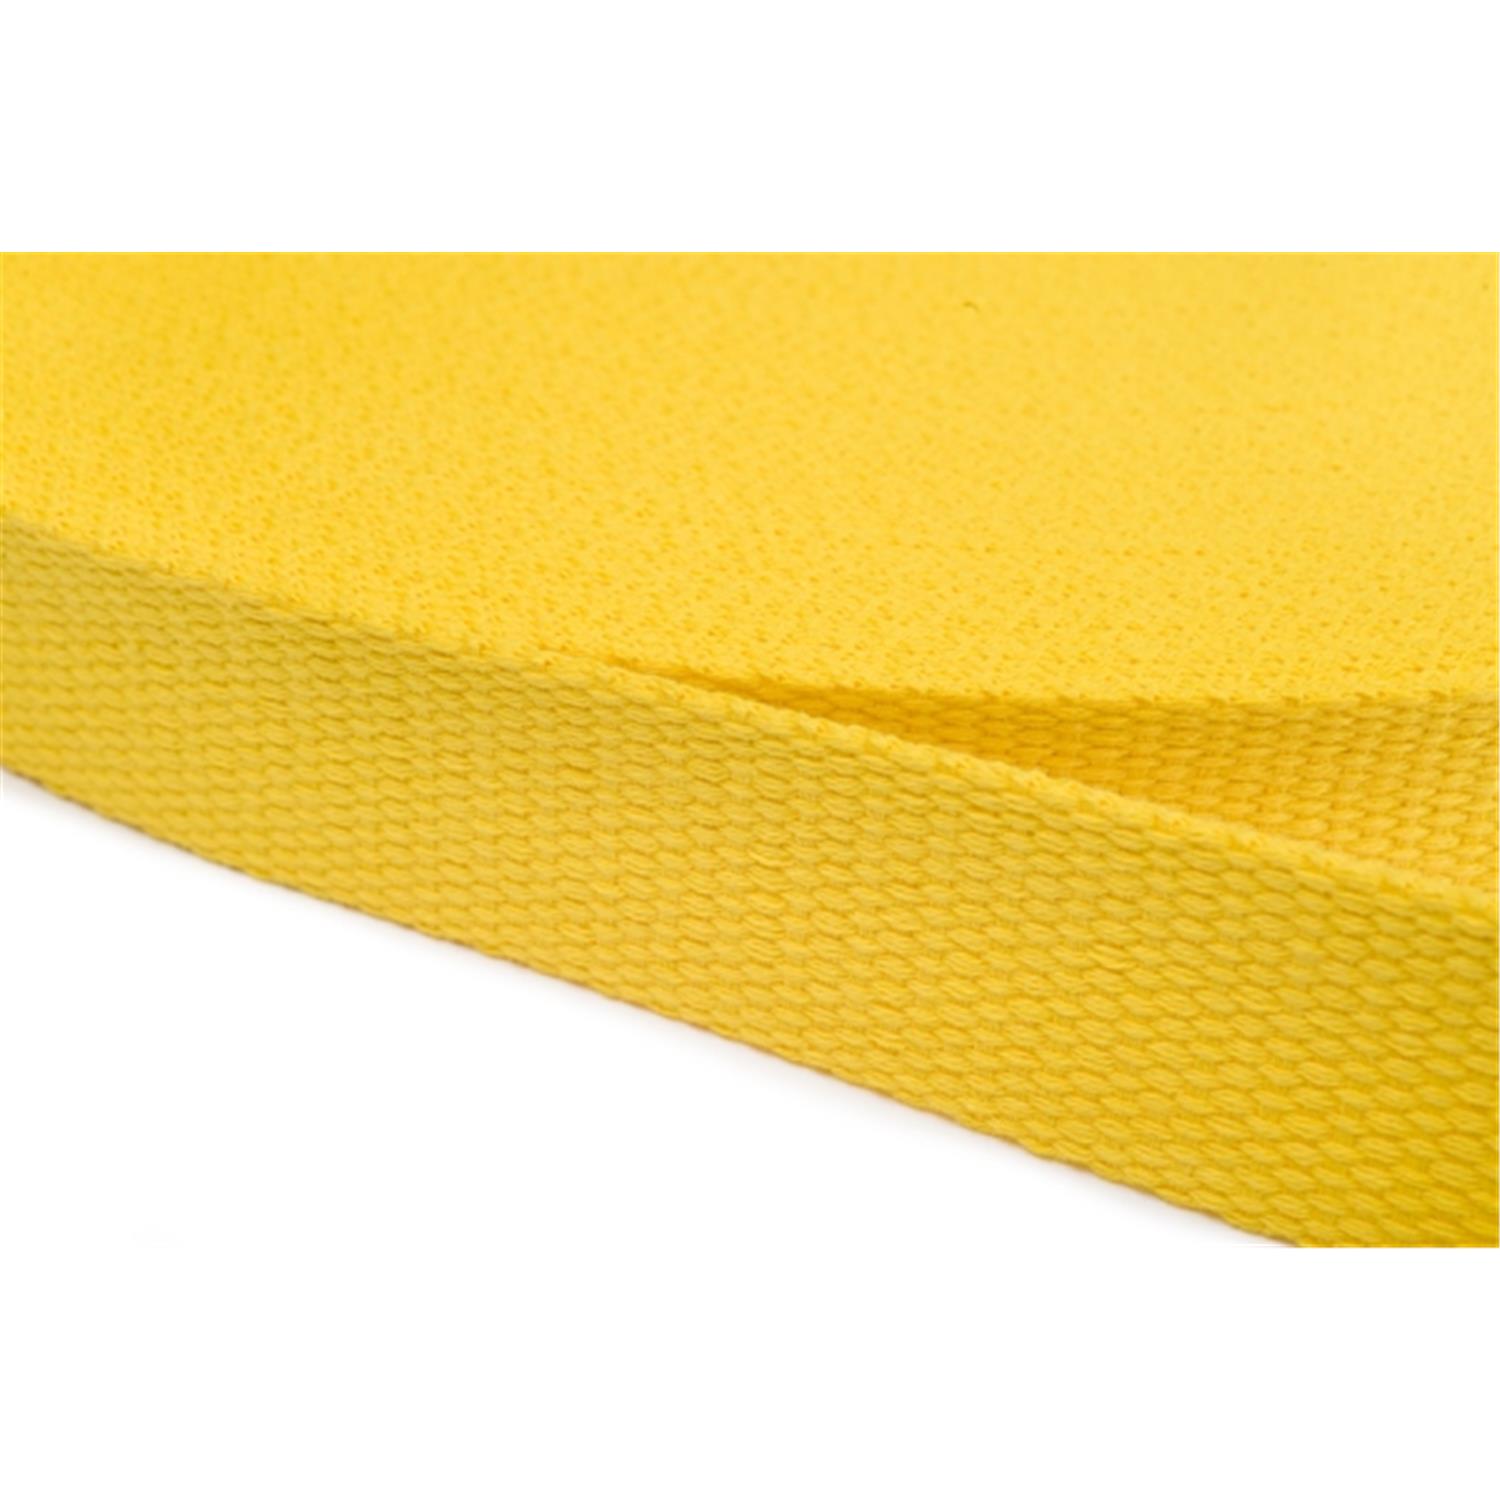 Gurtband aus Baumwolle 50mm in 20 Farben 05 - gelb 12 Meter